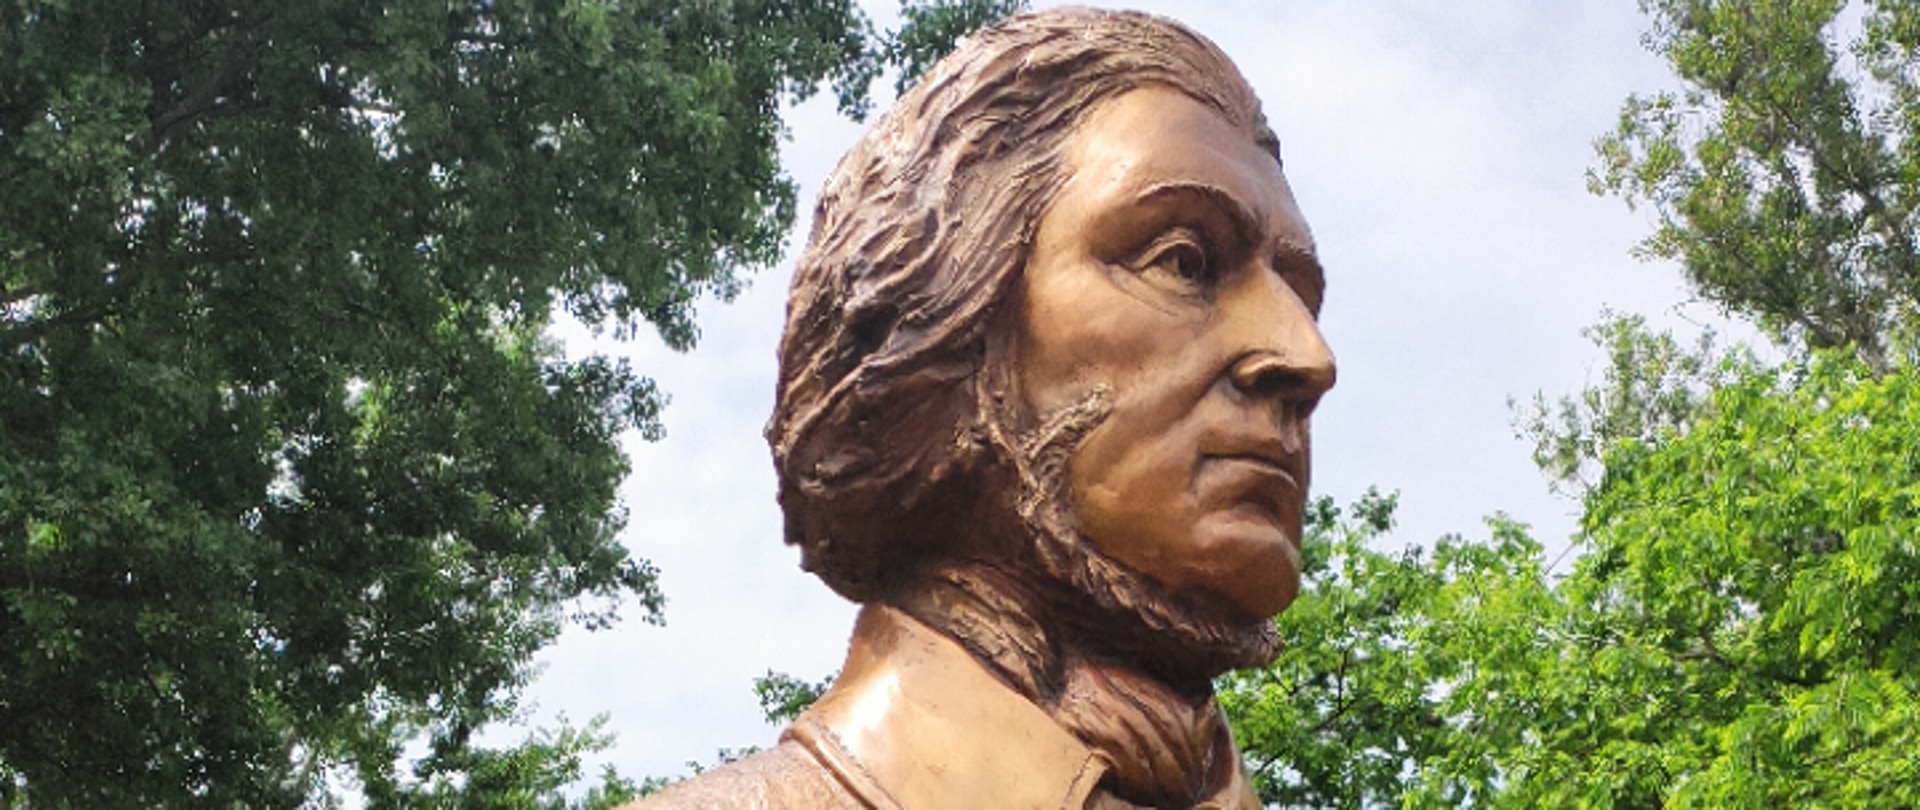 W Budapeszcie odsłonięto pomnik Adama Mickiewicza